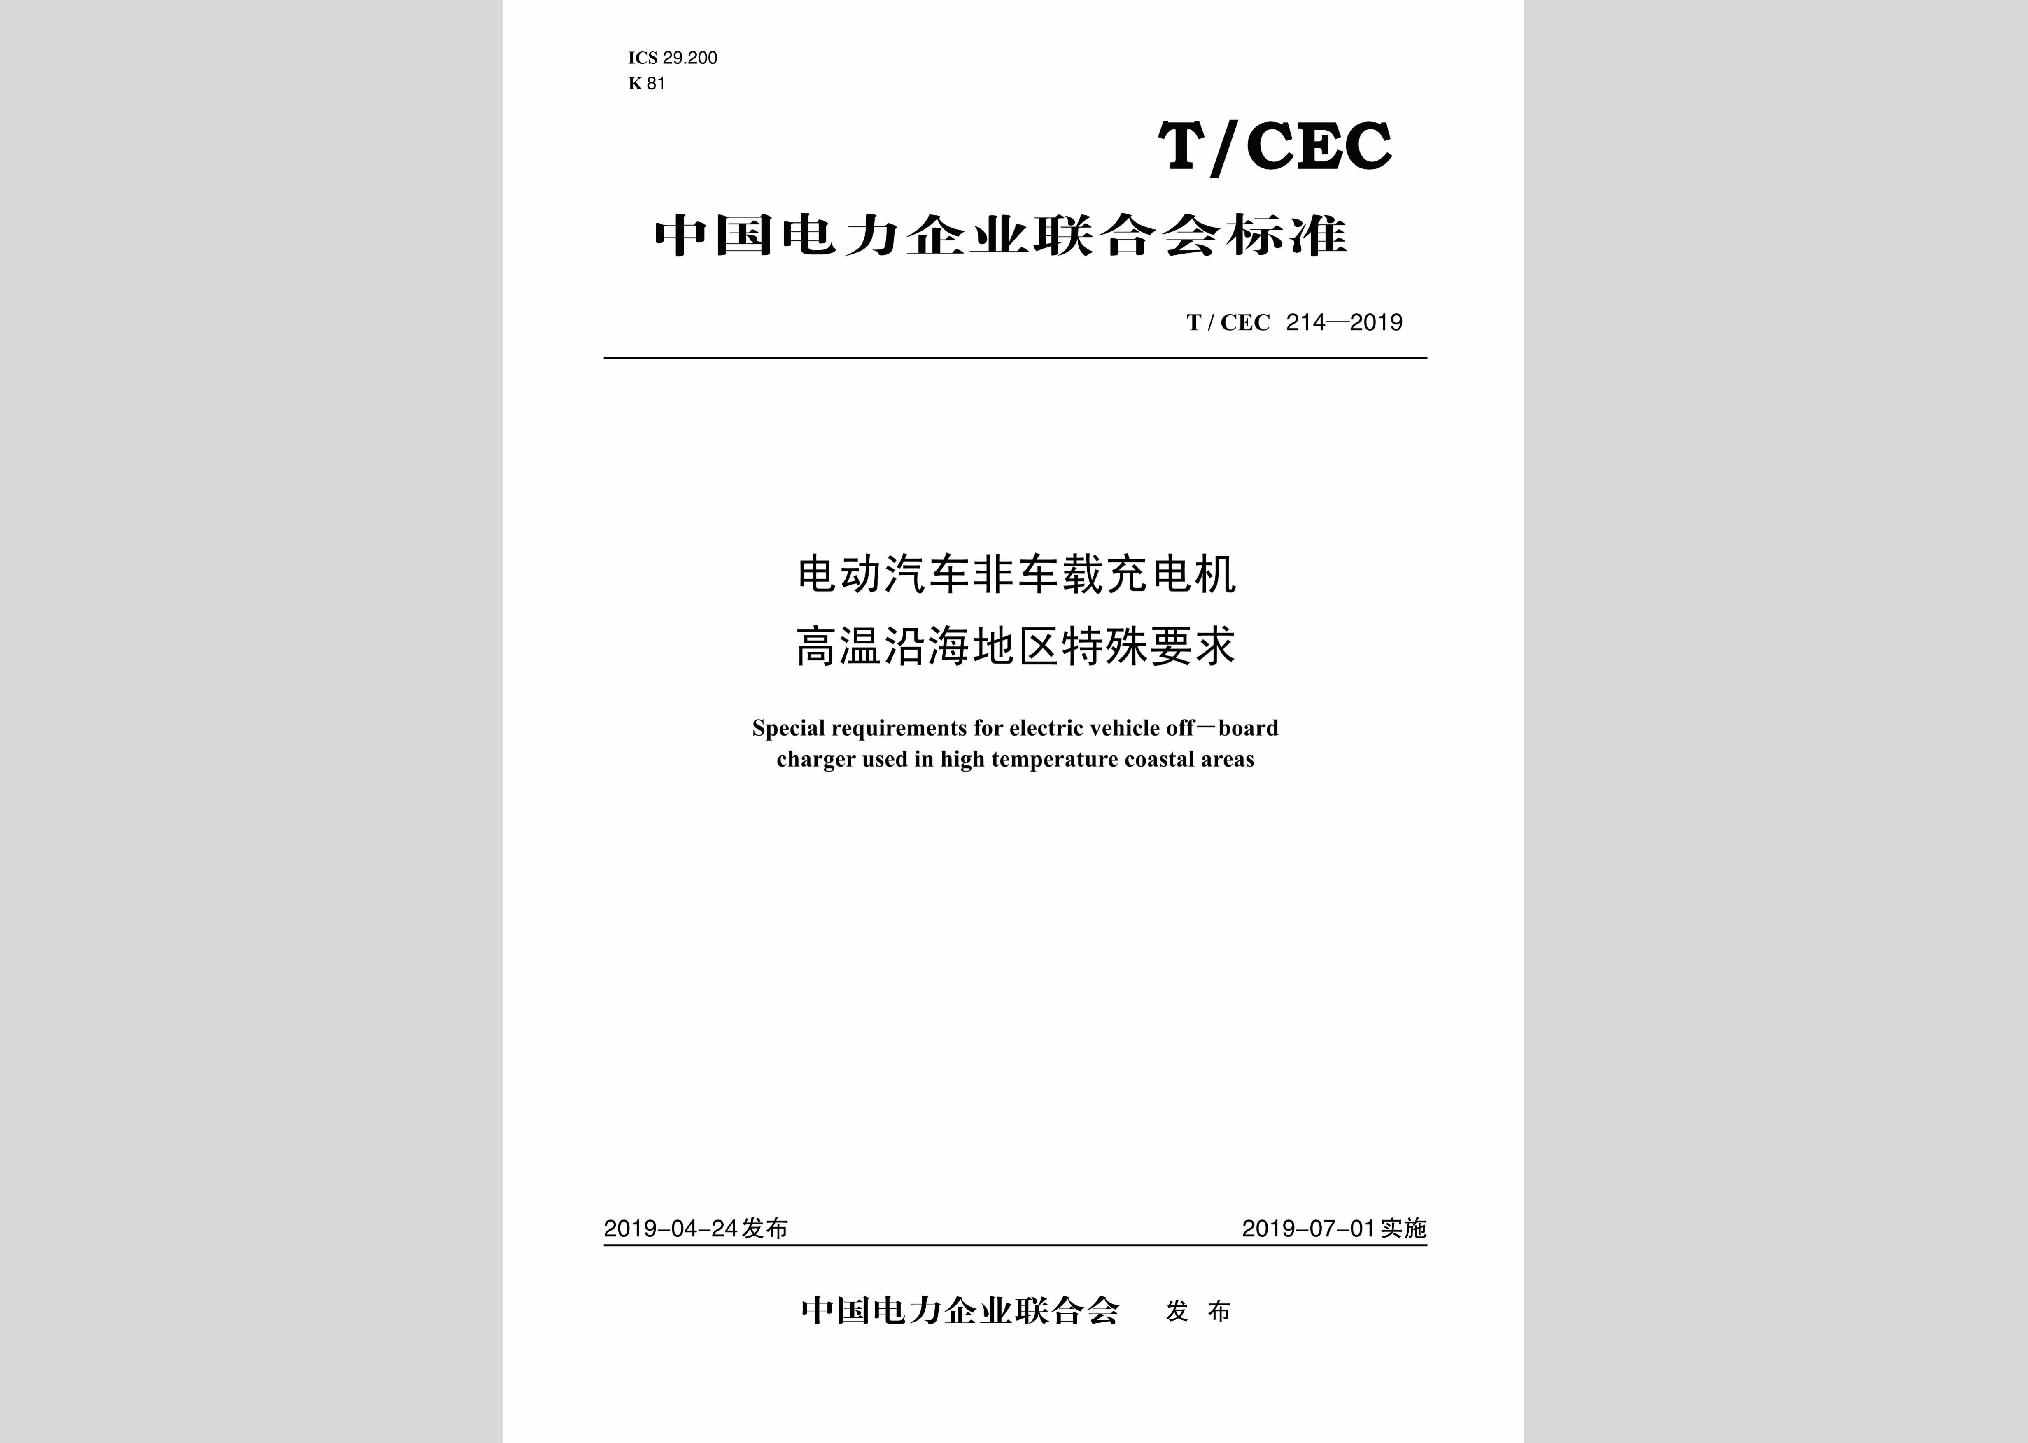 T/CEC214-2019：电动汽车非车载充电机高温沿海地区特殊要求